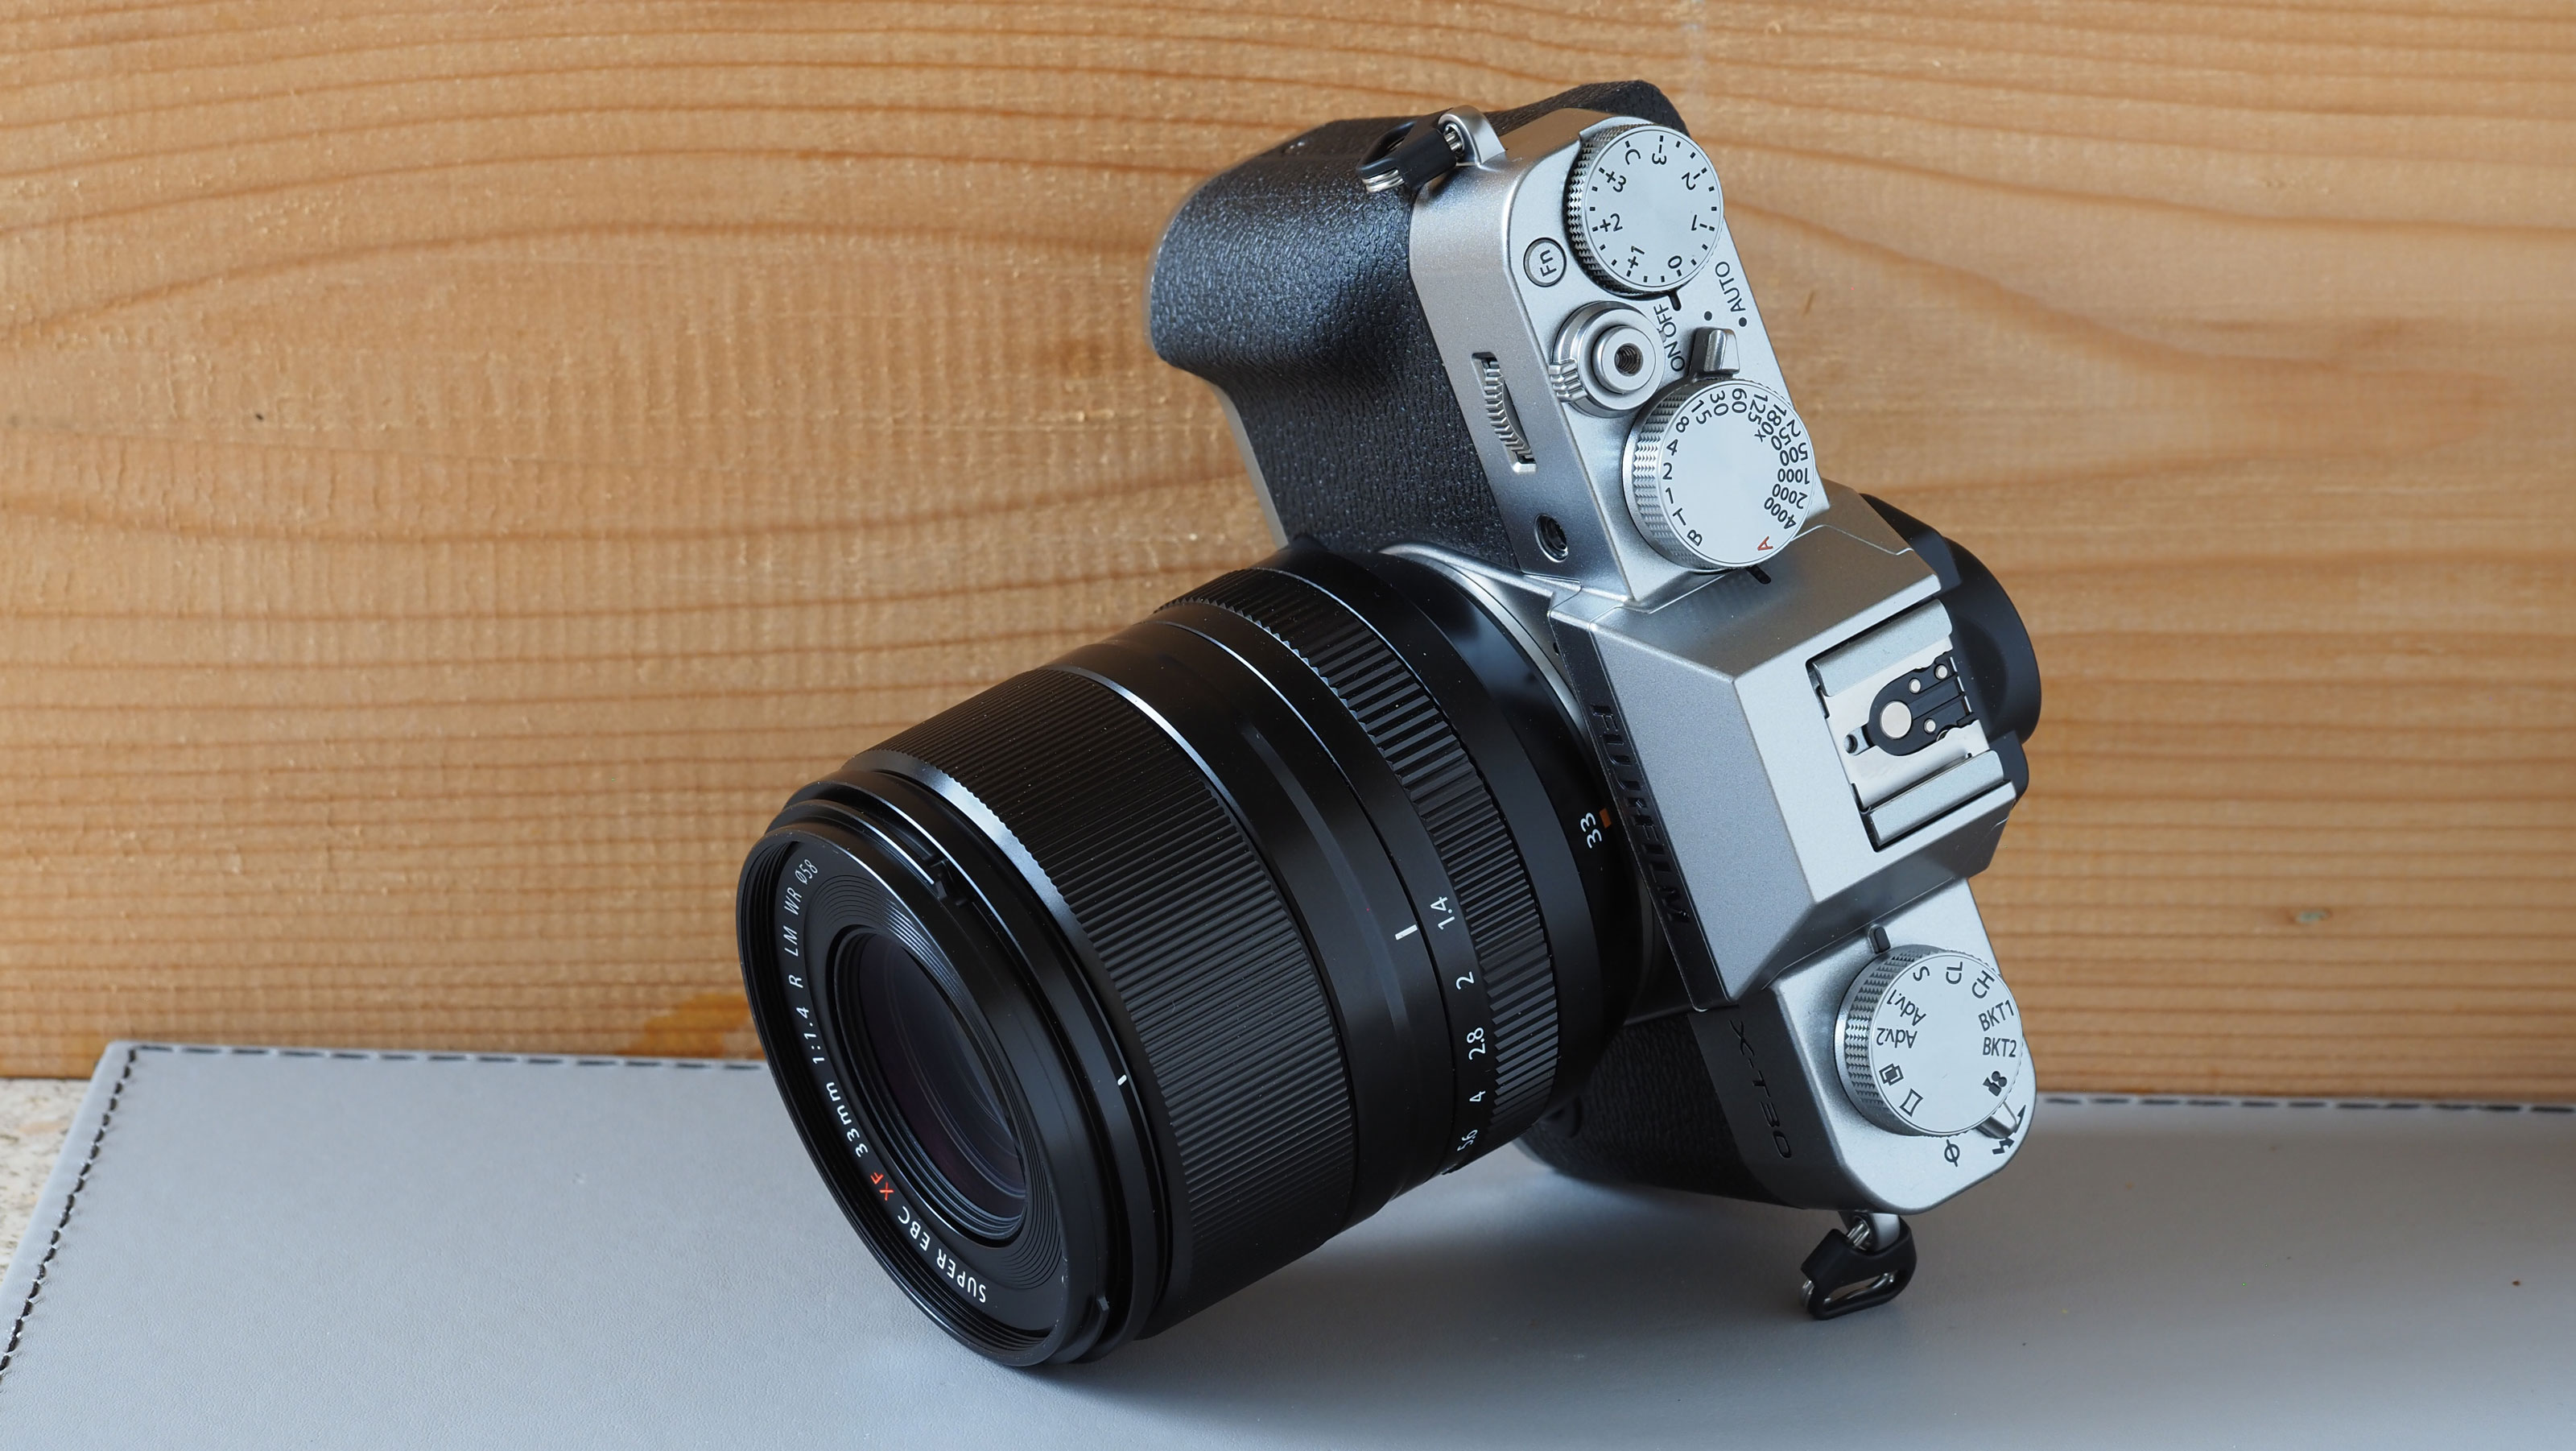 Máy ảnh Fujifilm X-T30 II